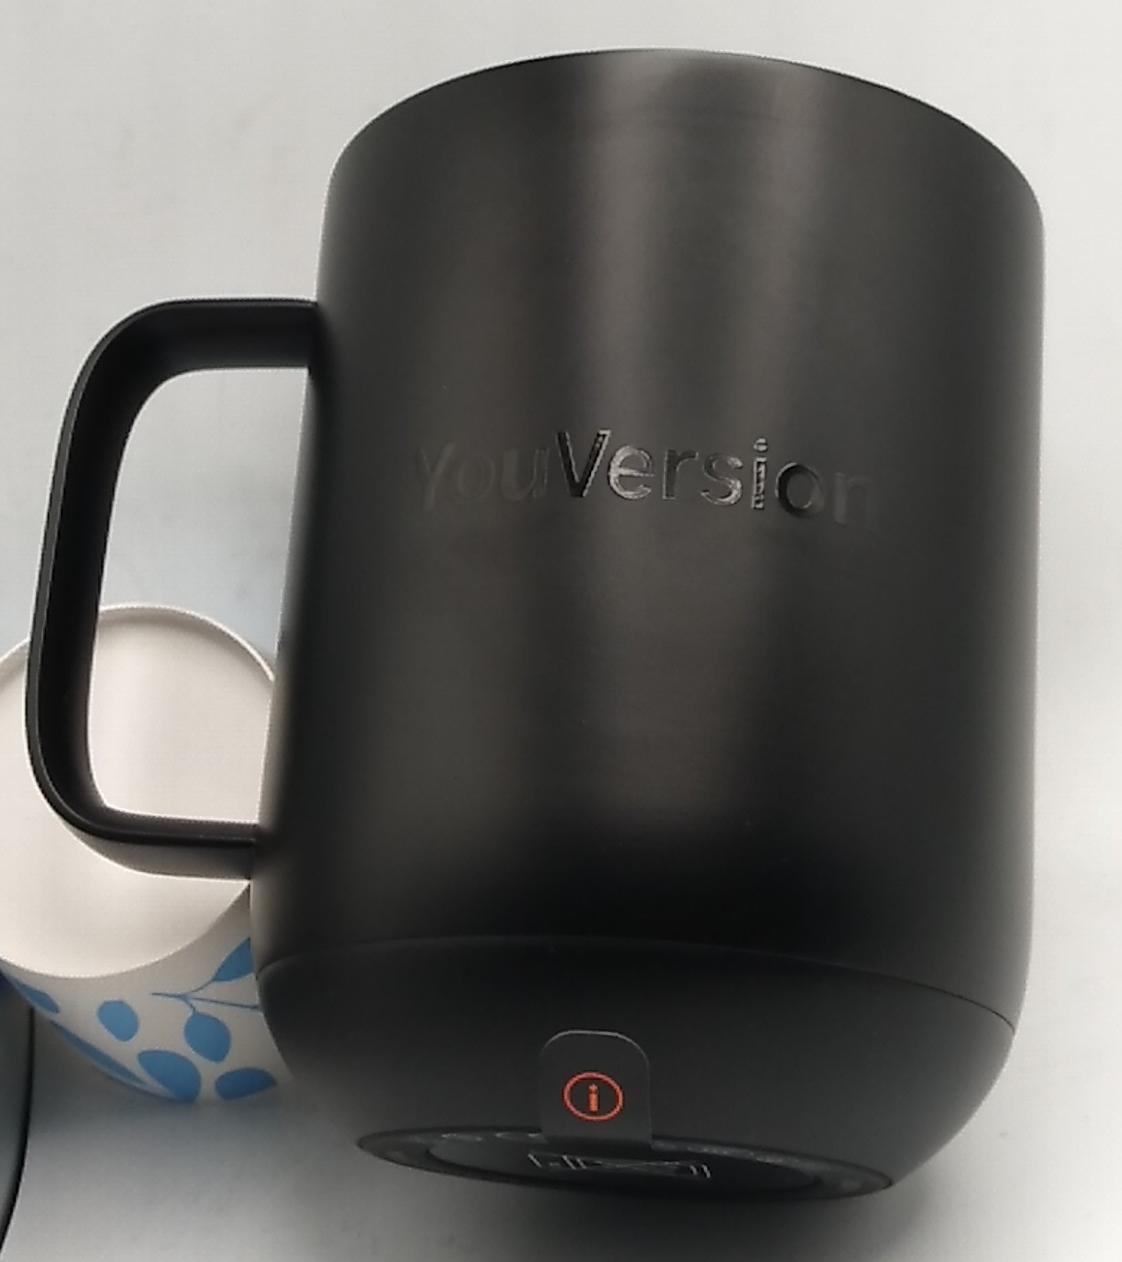 Ember Ceramic Mug 10oz custom printed ember ceramic coffee mug with logo